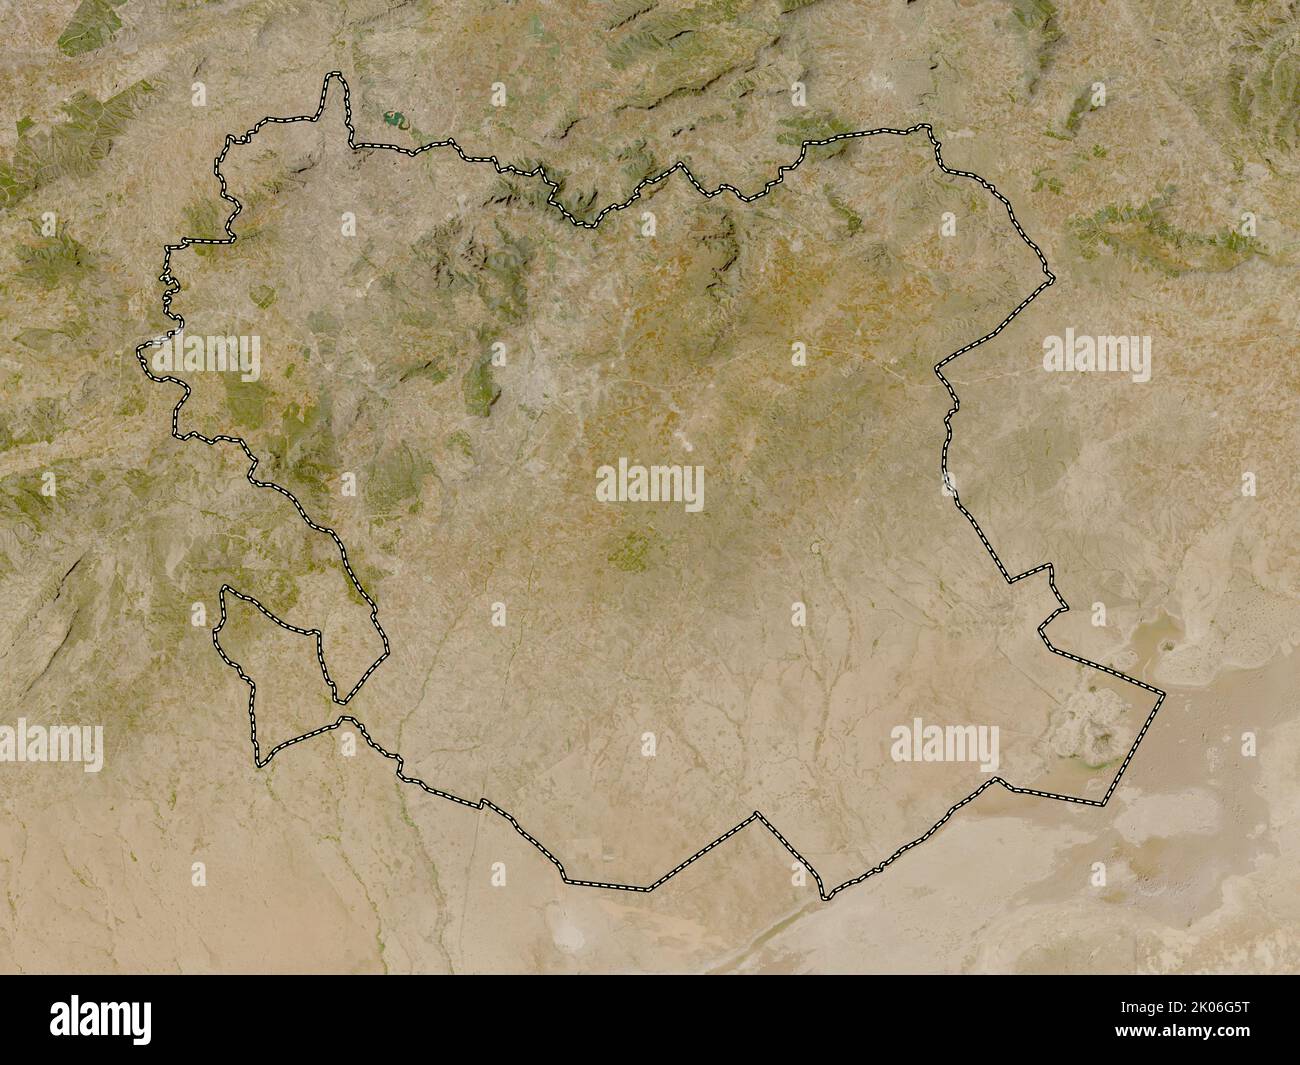 Saida, province d'Algérie. Carte satellite basse résolution Banque D'Images